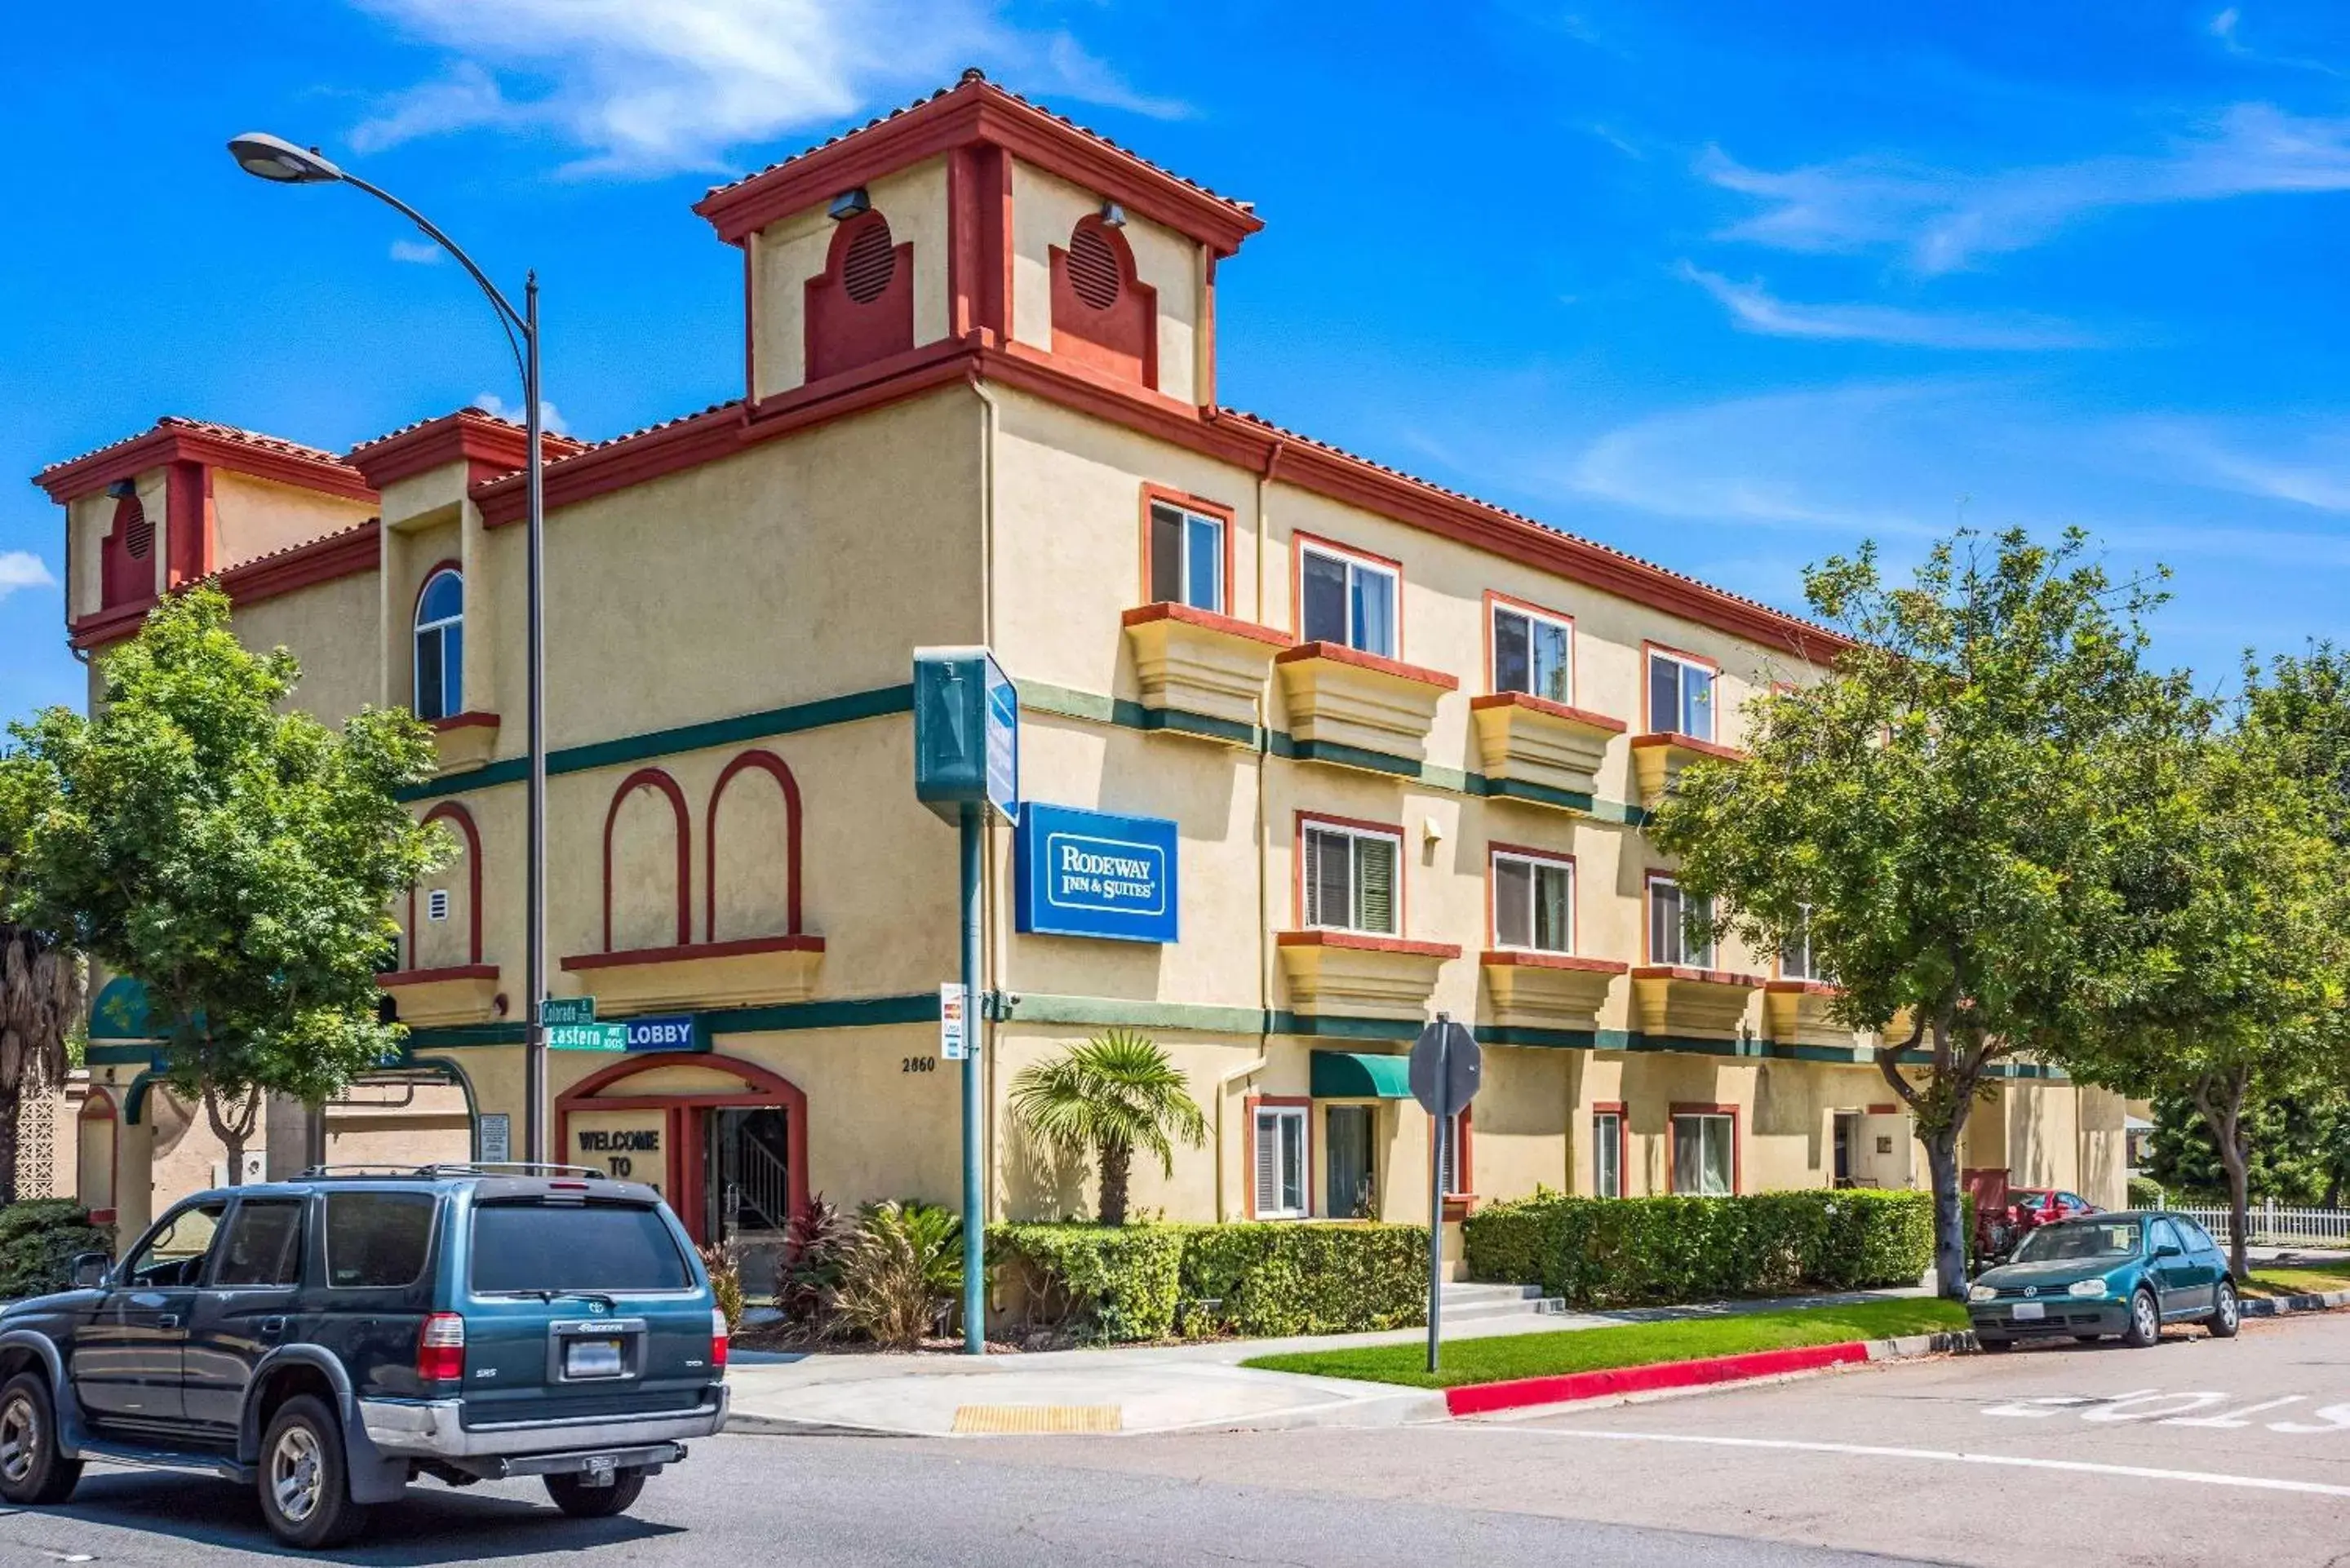 Property Building in Rodeway Inn & Suites - Pasadena